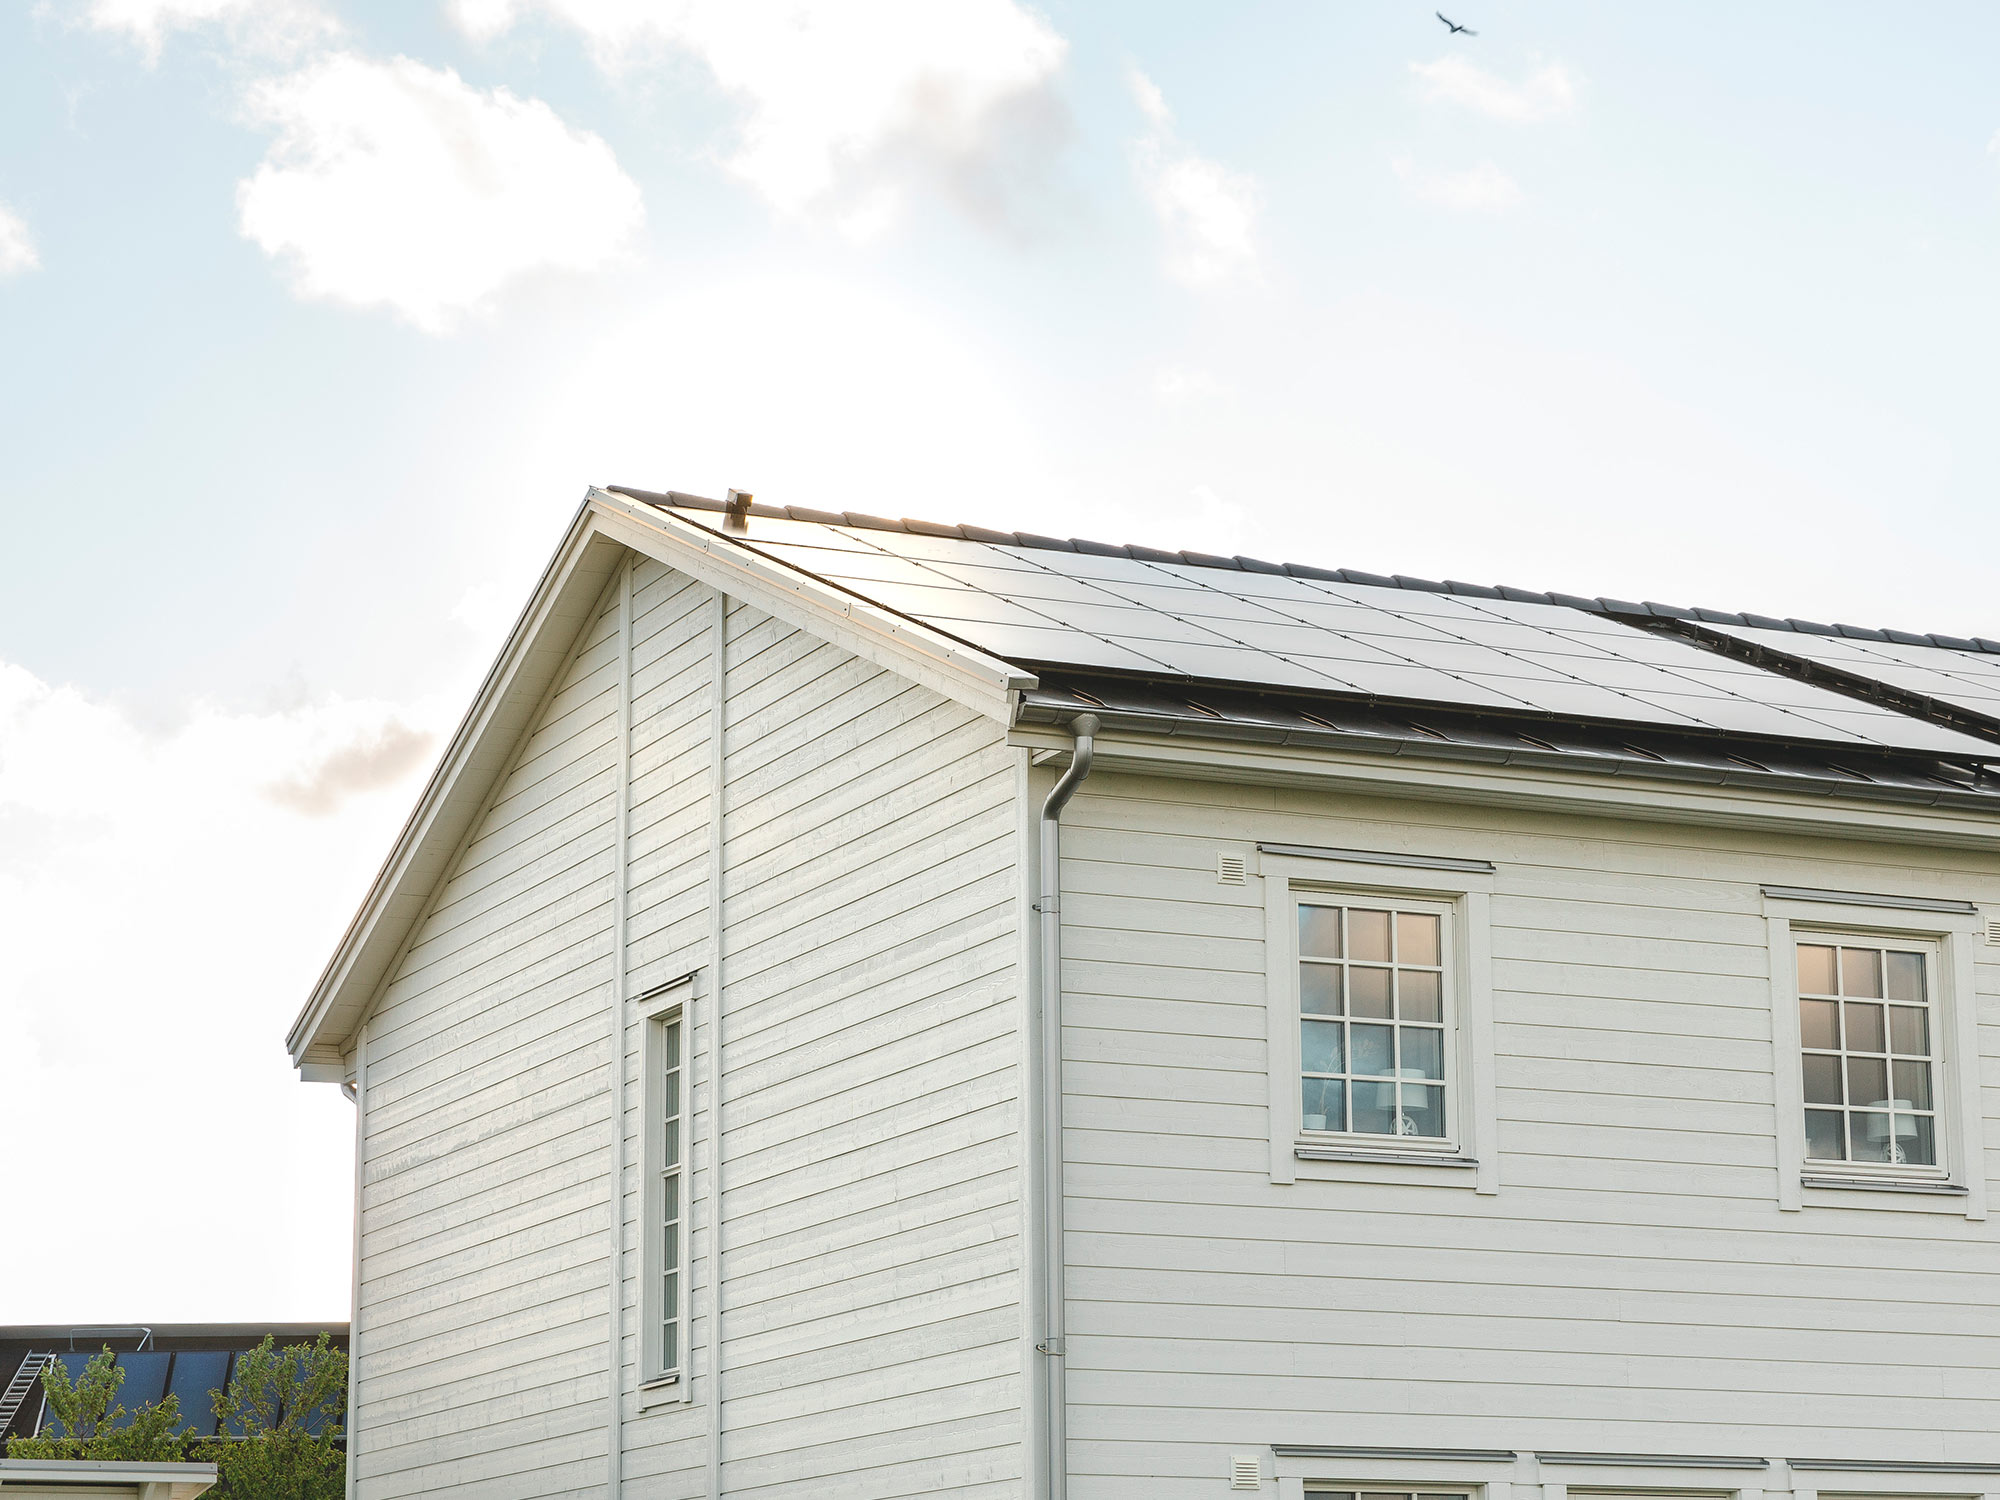 Genom att installera solceller på taket kan du som kund hos Falkenberg Energi sälja överskottet av din solel till Falkenberg Energi